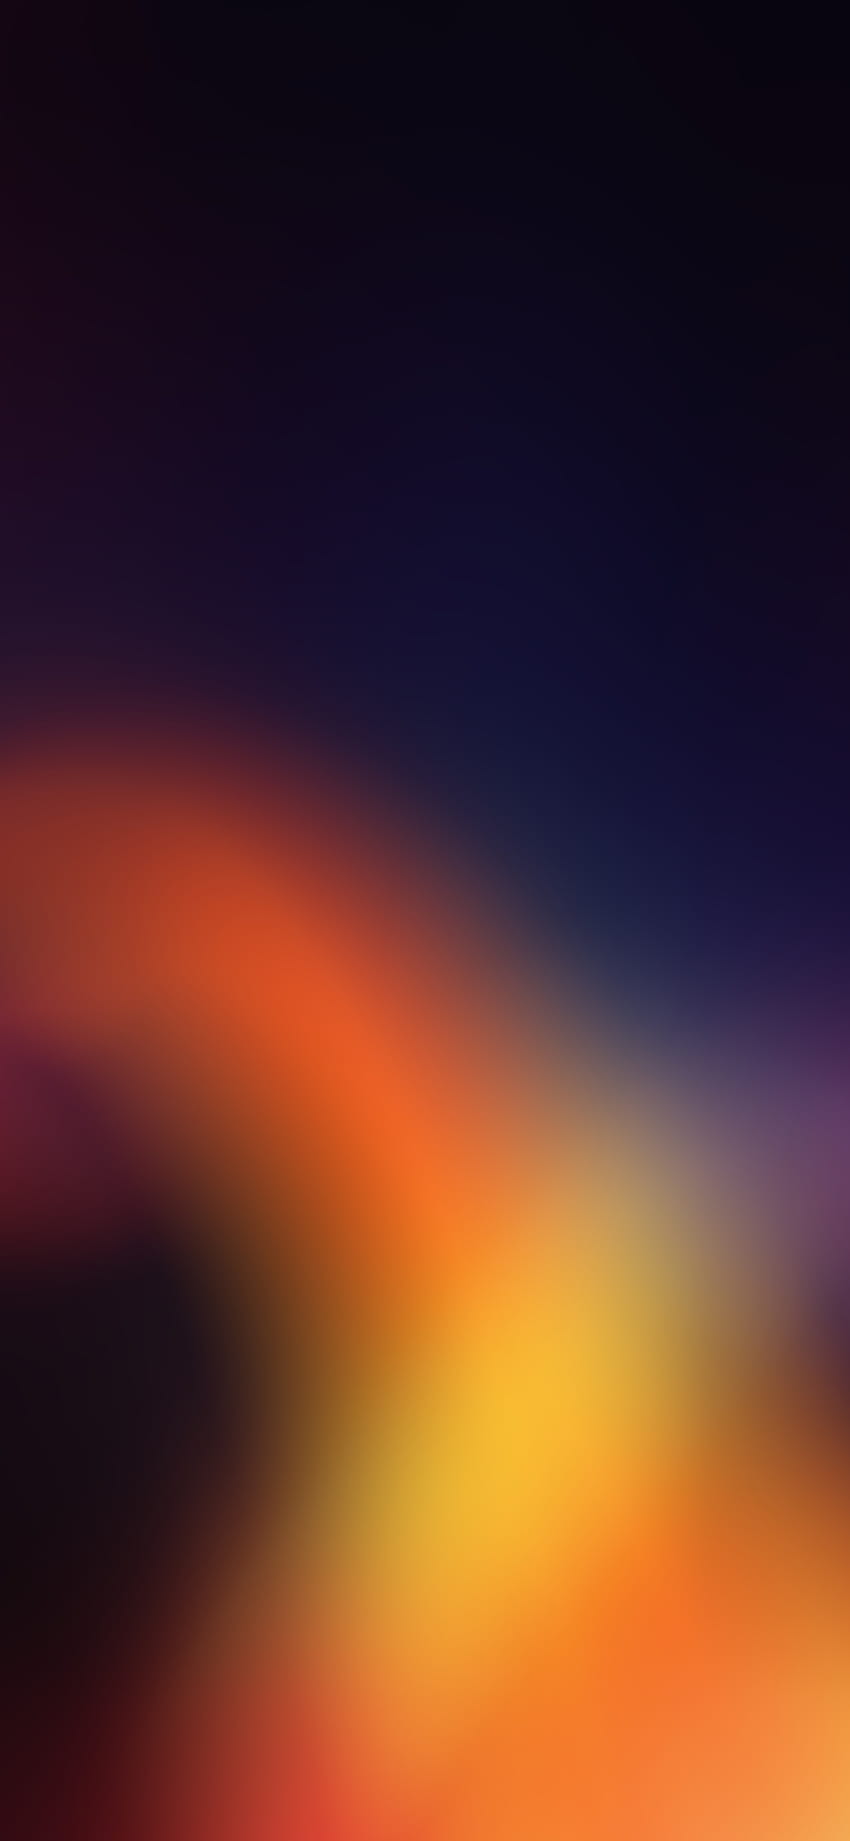 The Orange to Black fade, dark color mobile HD phone wallpaper